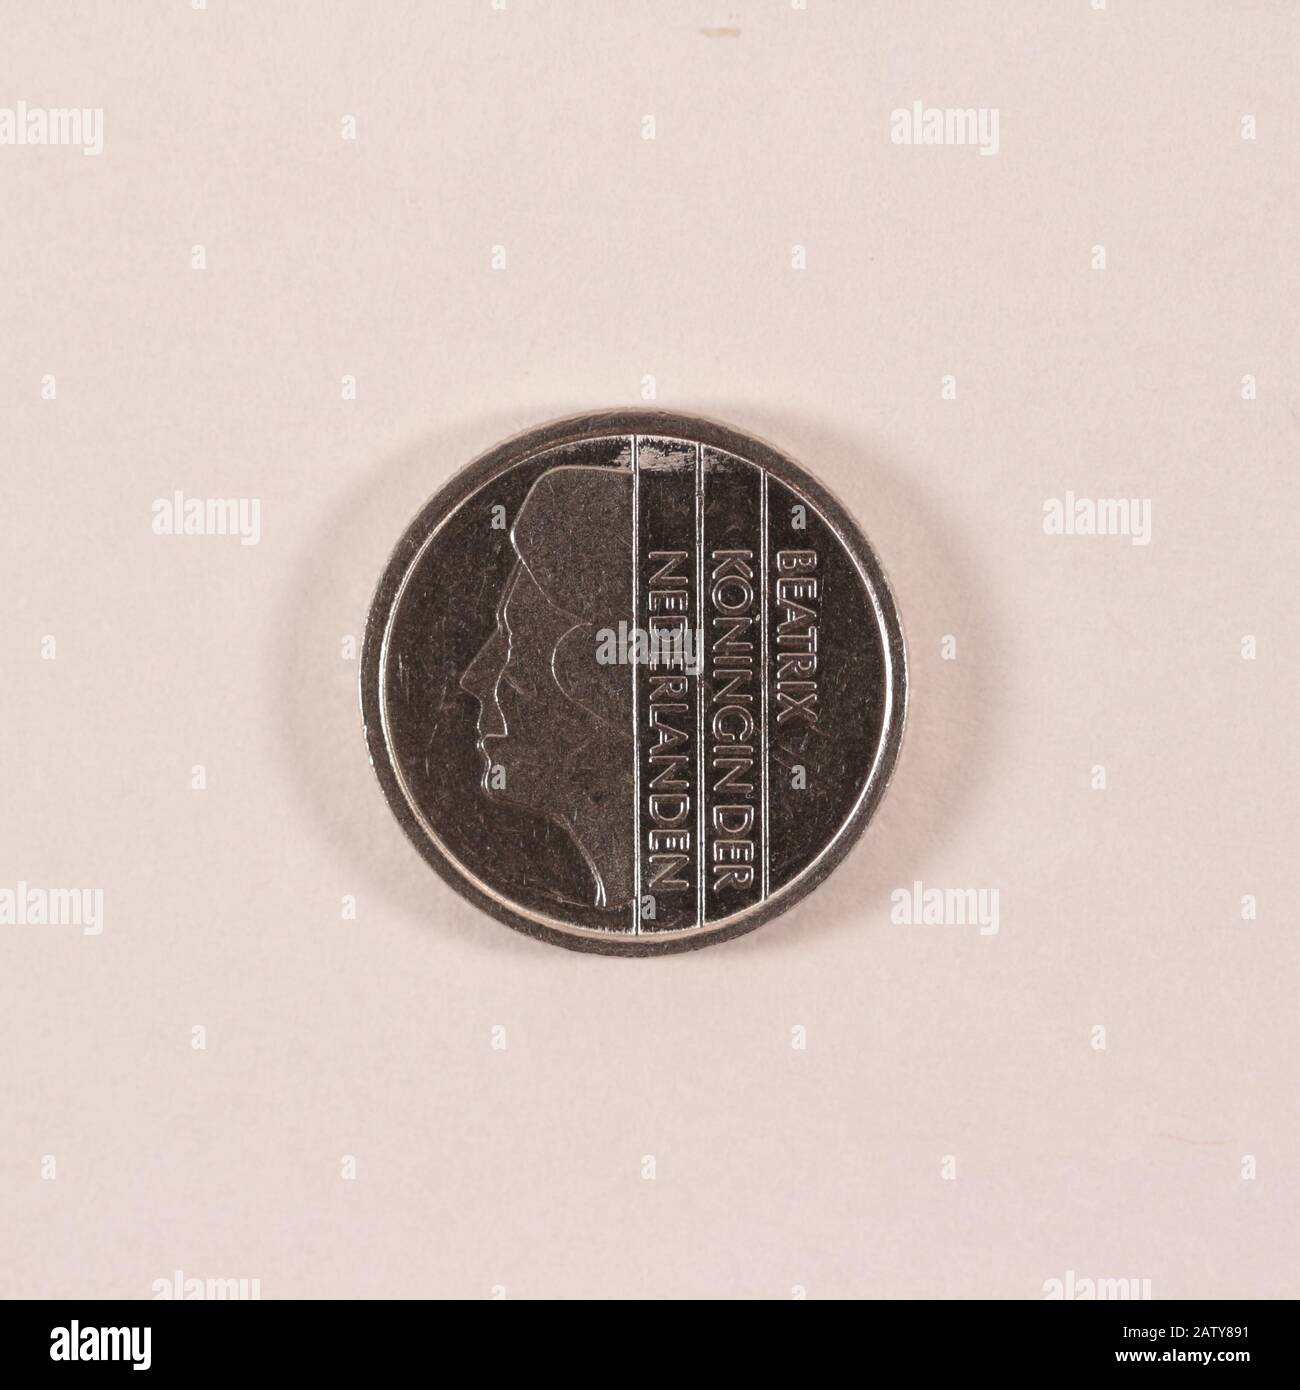 Rückseite einer ehemalien Niederländischen 25 Cent Münze Foto Stock